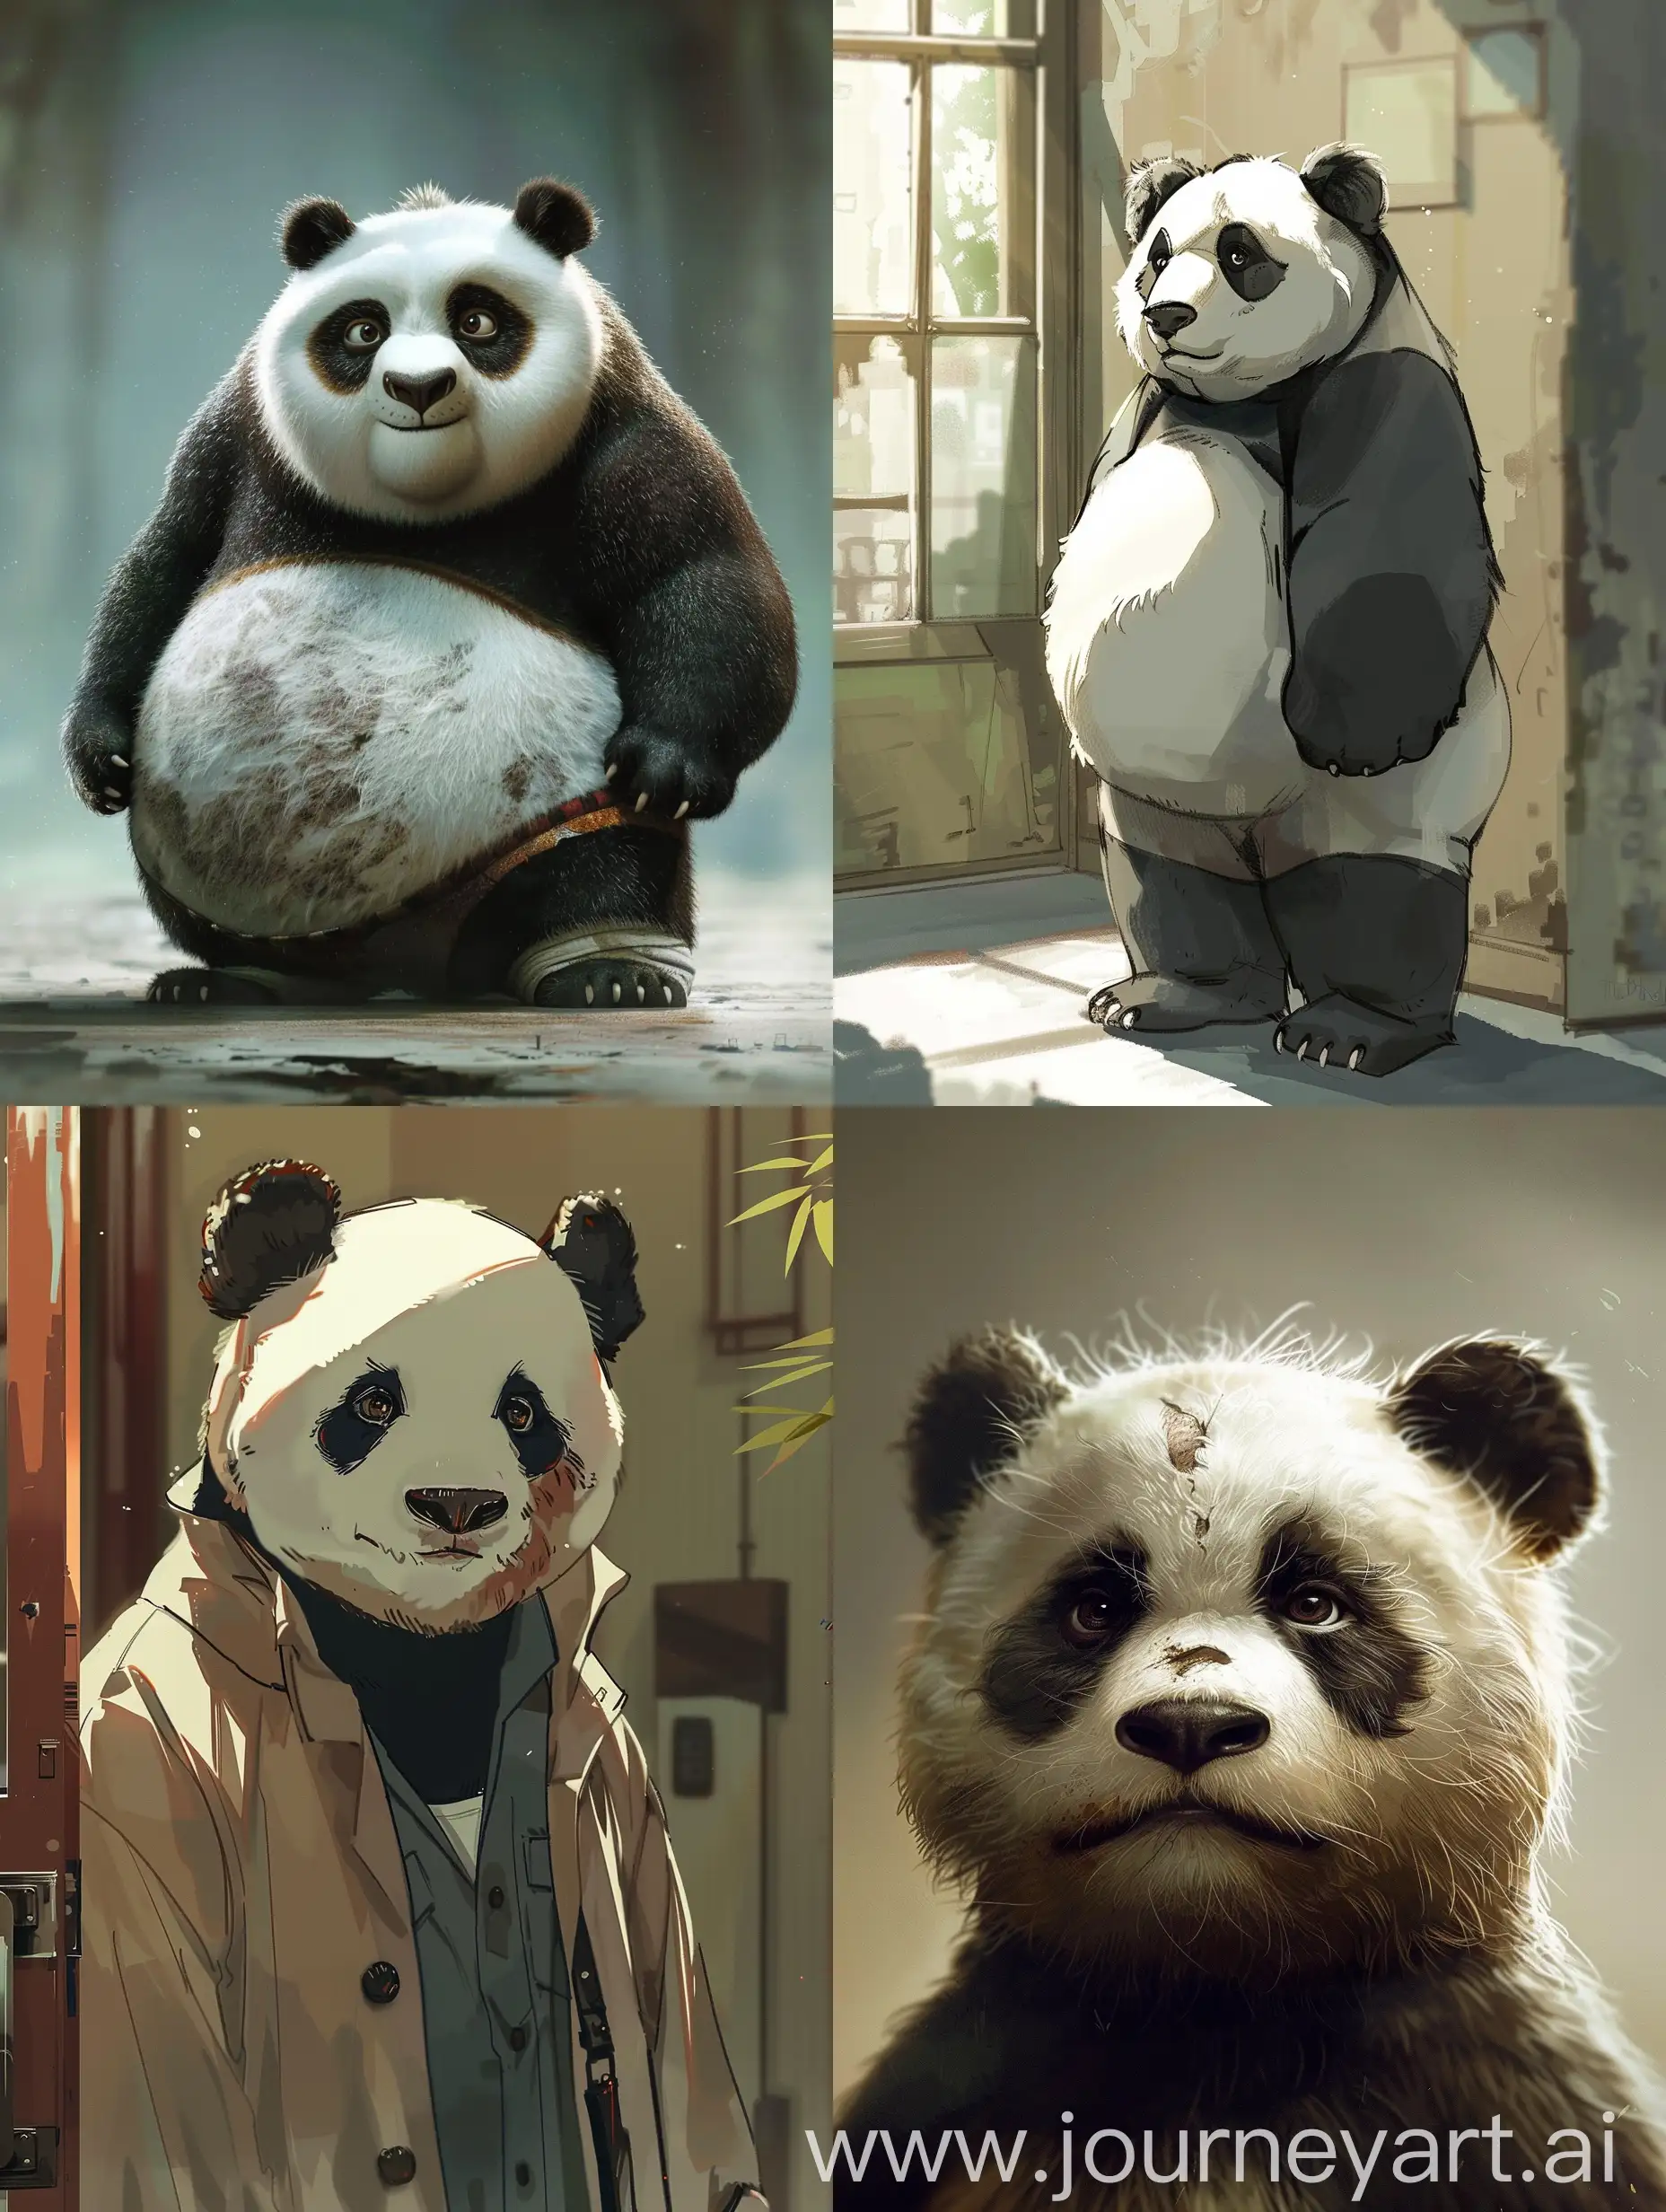 Нужно, чтобы панда стал человеческим парнем. Обязательно с чёрными кругами под глазами и слегка пухлым.